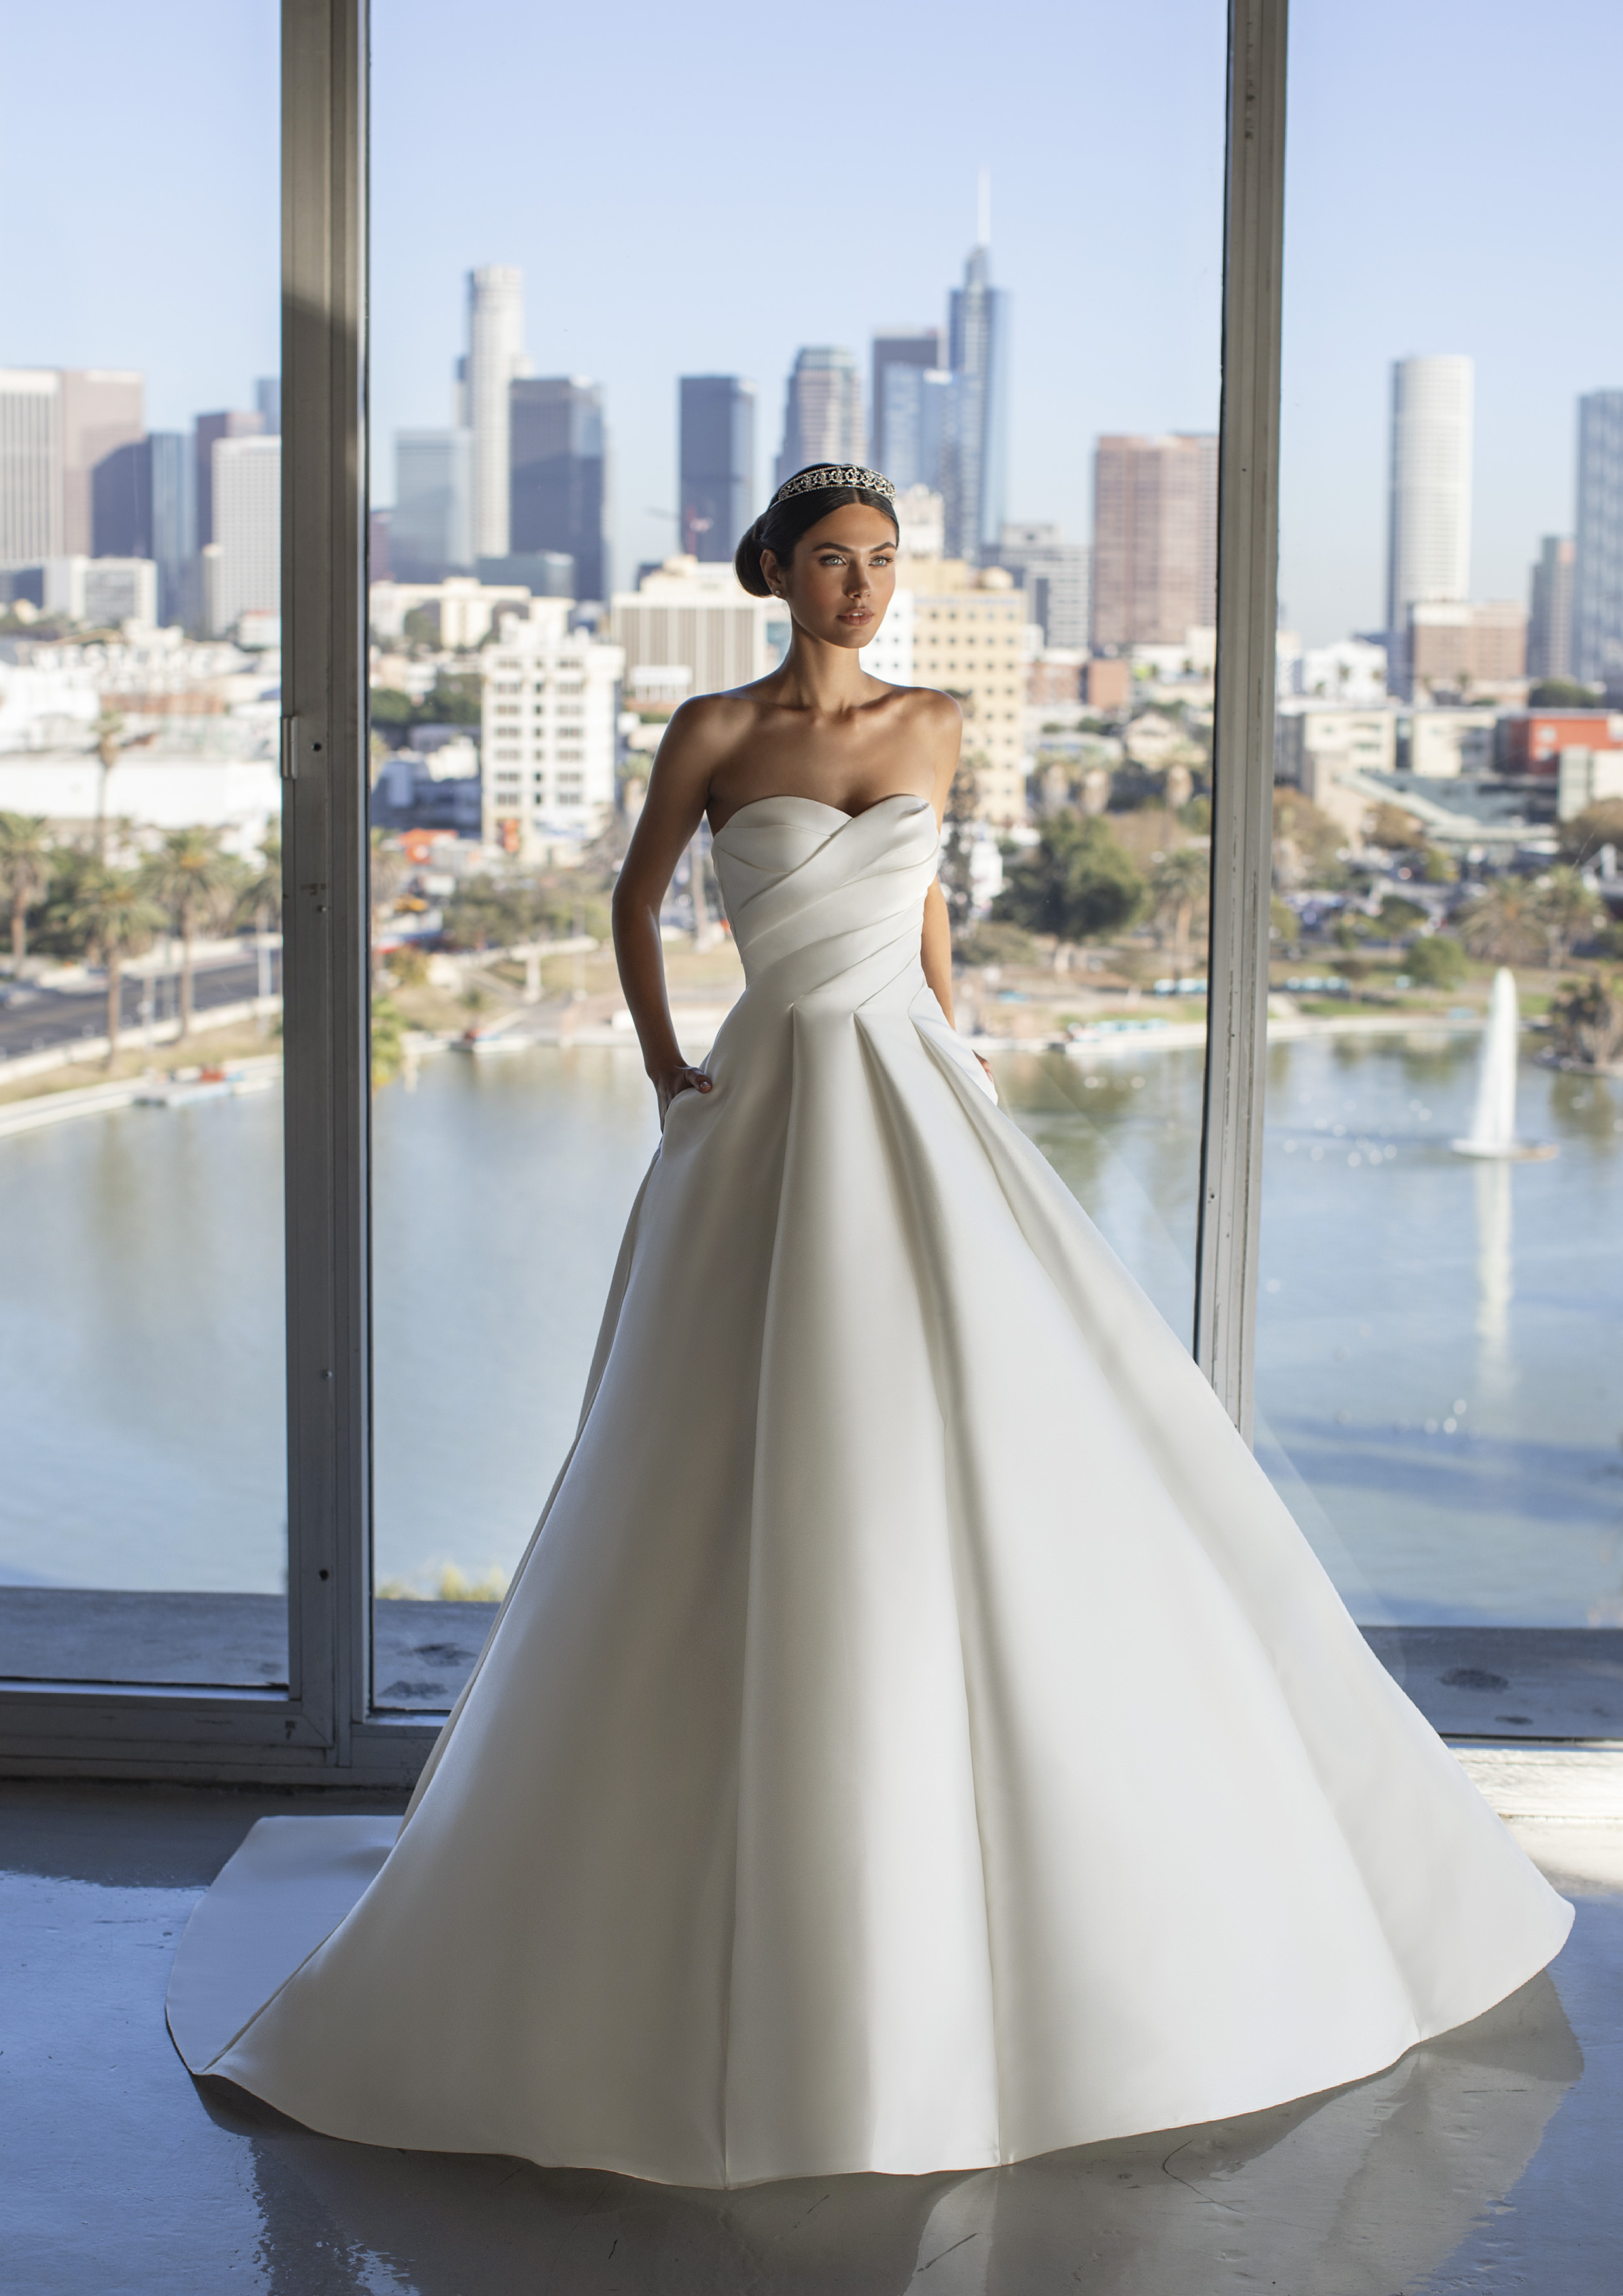 Vestido de noiva modelo Jurado da coleção Pronovias 2021 Cruise Collection